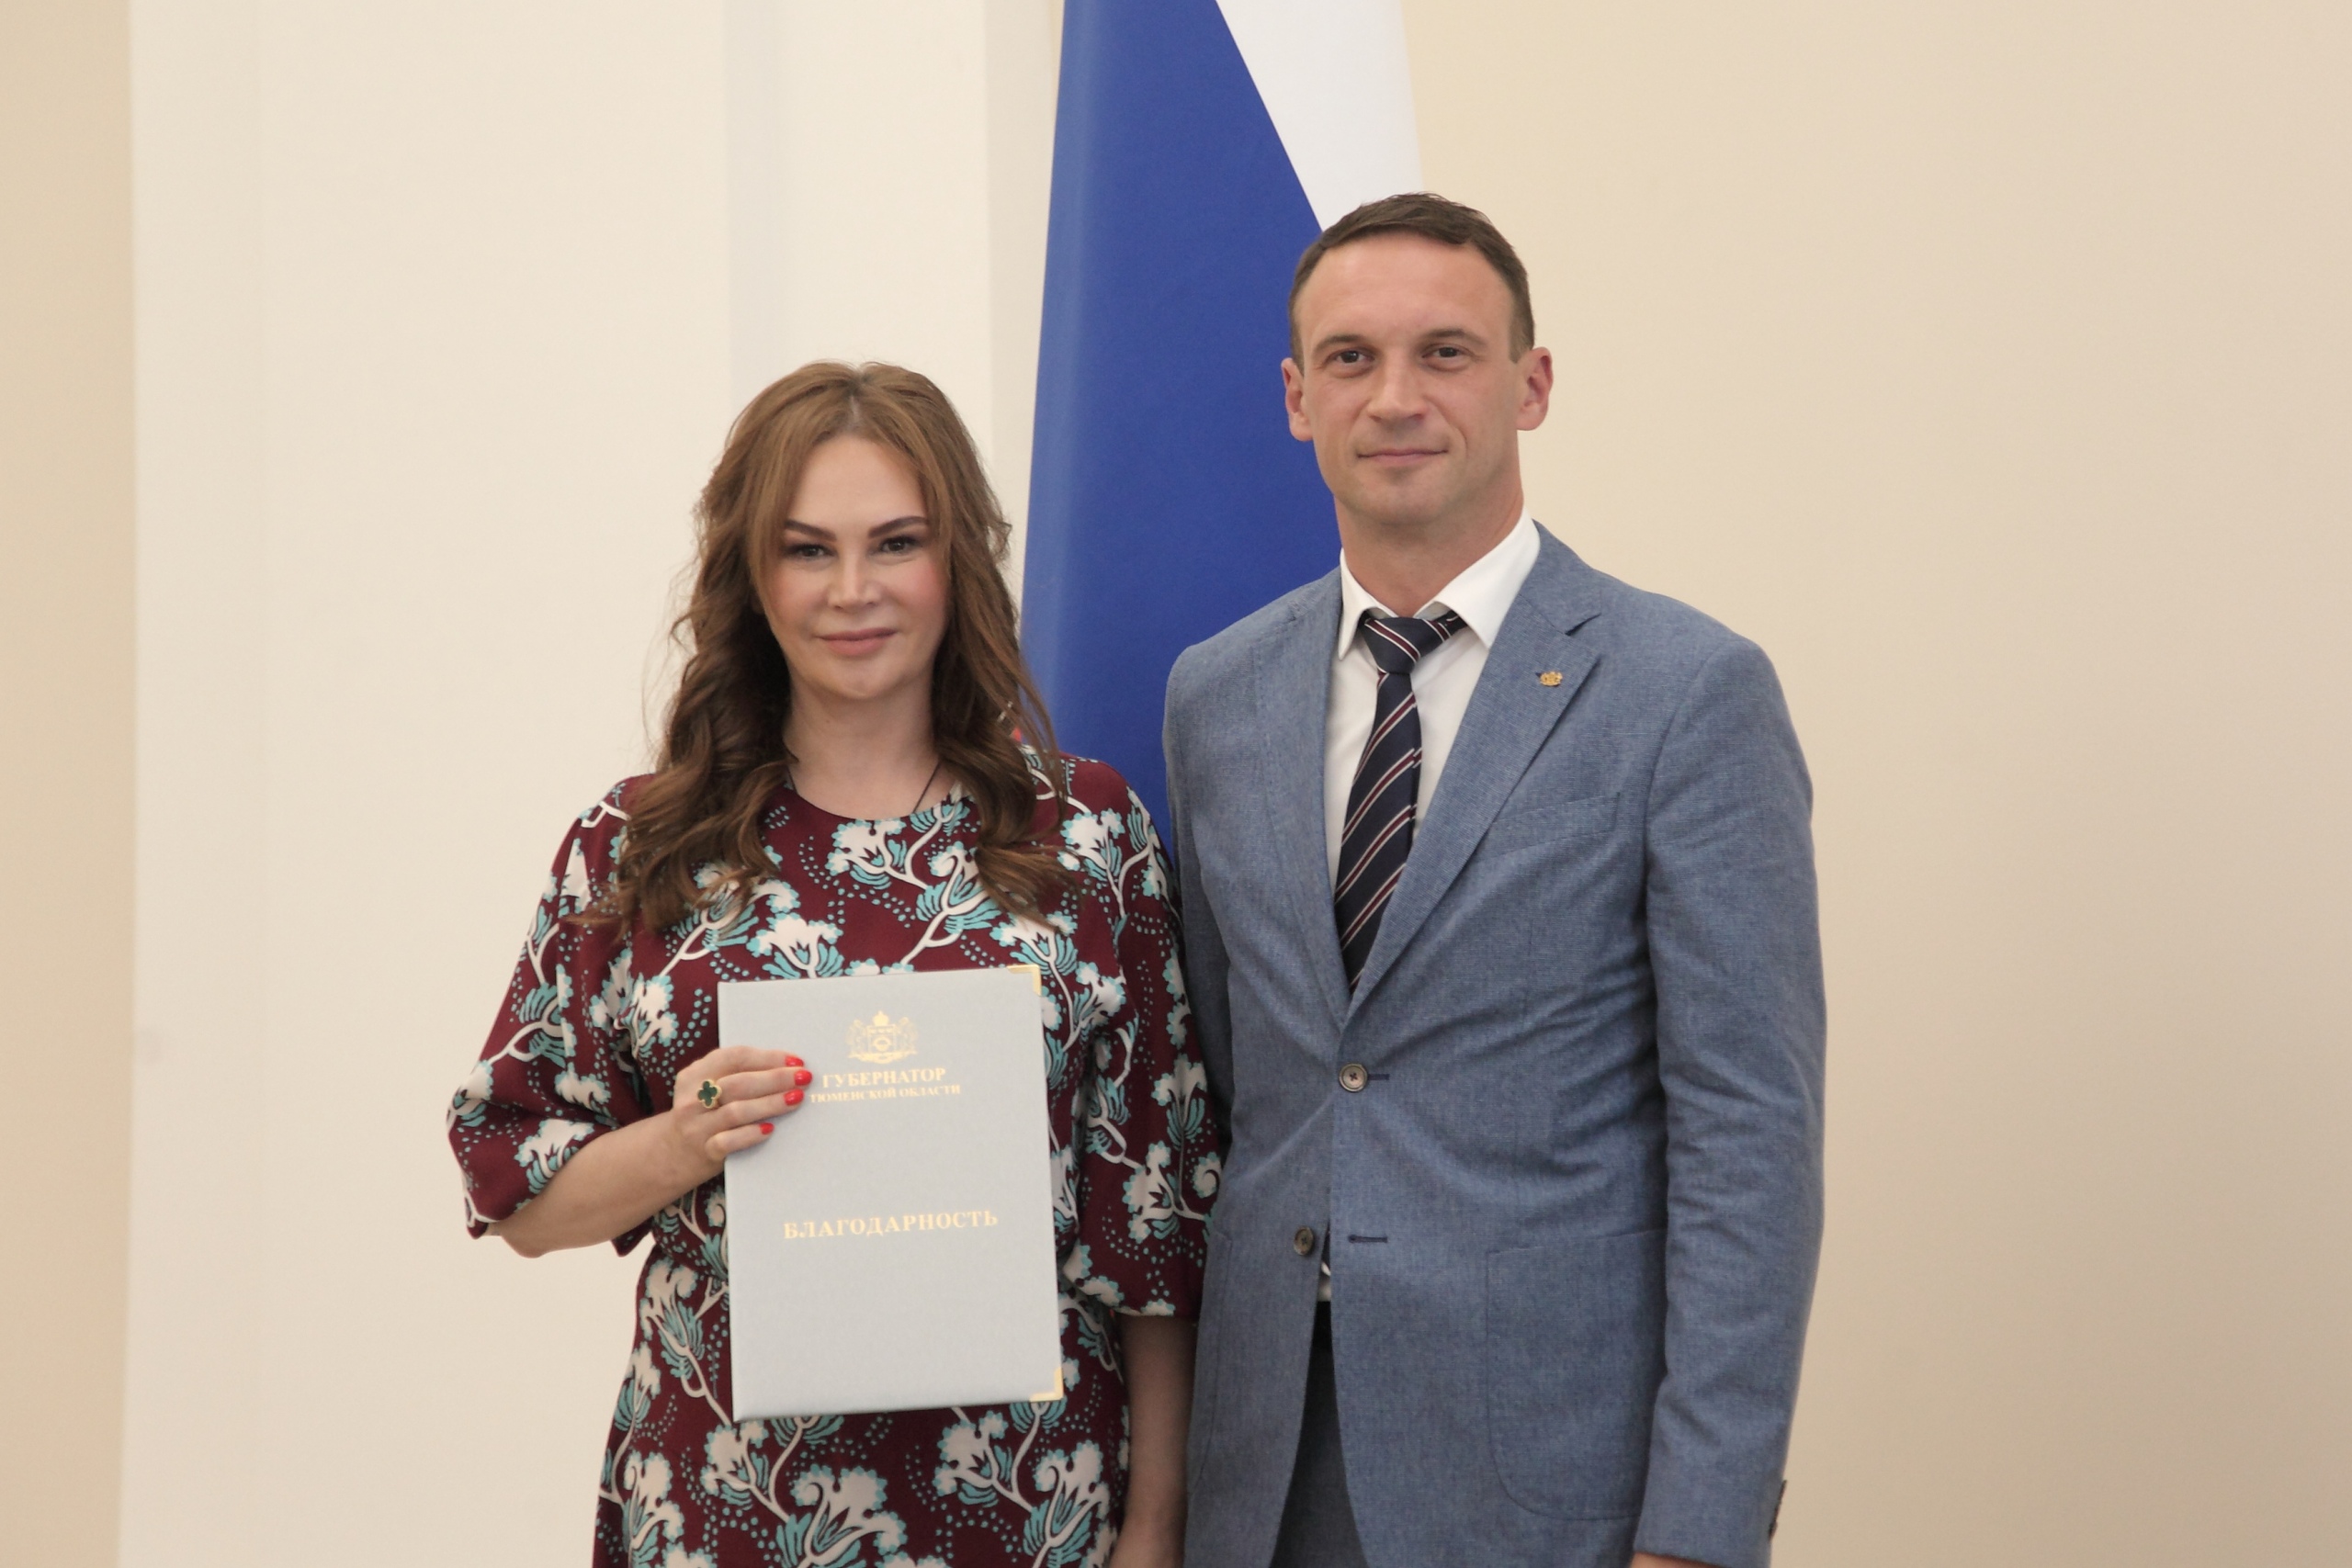 Ольга Гирилюк в 2019 году получила благодарность от правительства Тюменской области. На фото она с заместителем губернатора Андреем Пантелеевым<br>